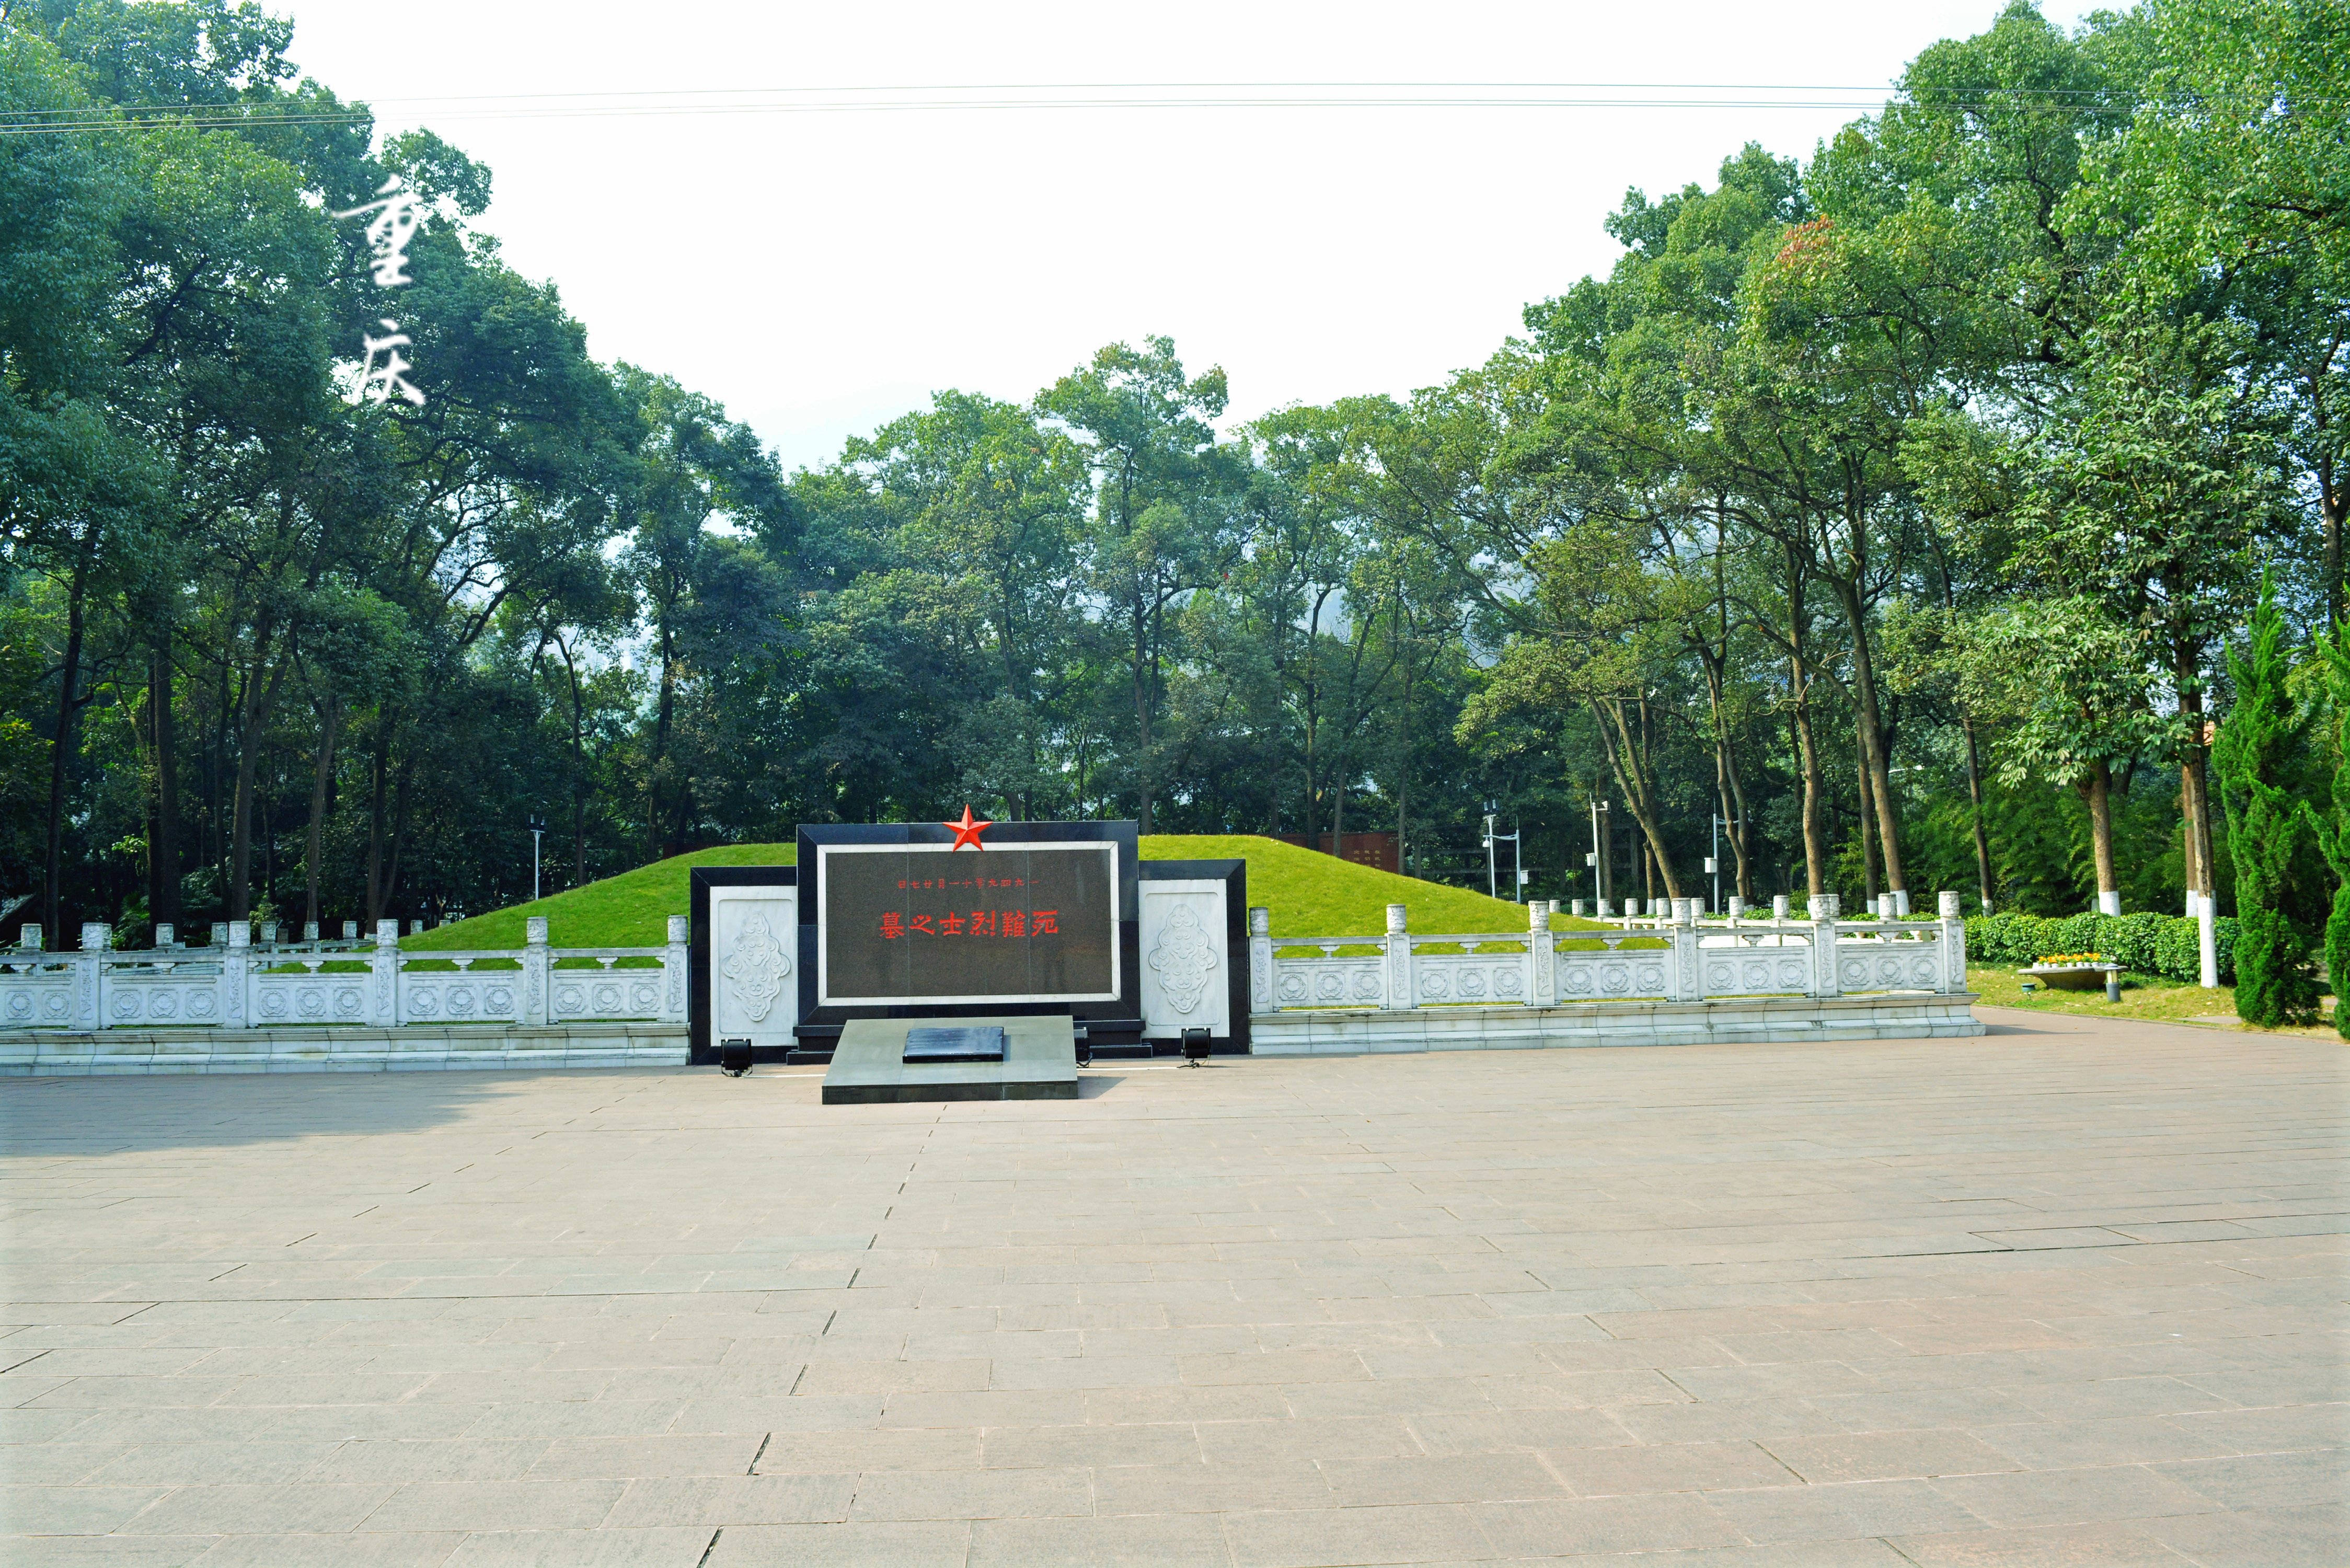 【携程攻略】重庆歌乐山烈士陵园适合朋友出游旅游吗,歌乐山烈士陵园